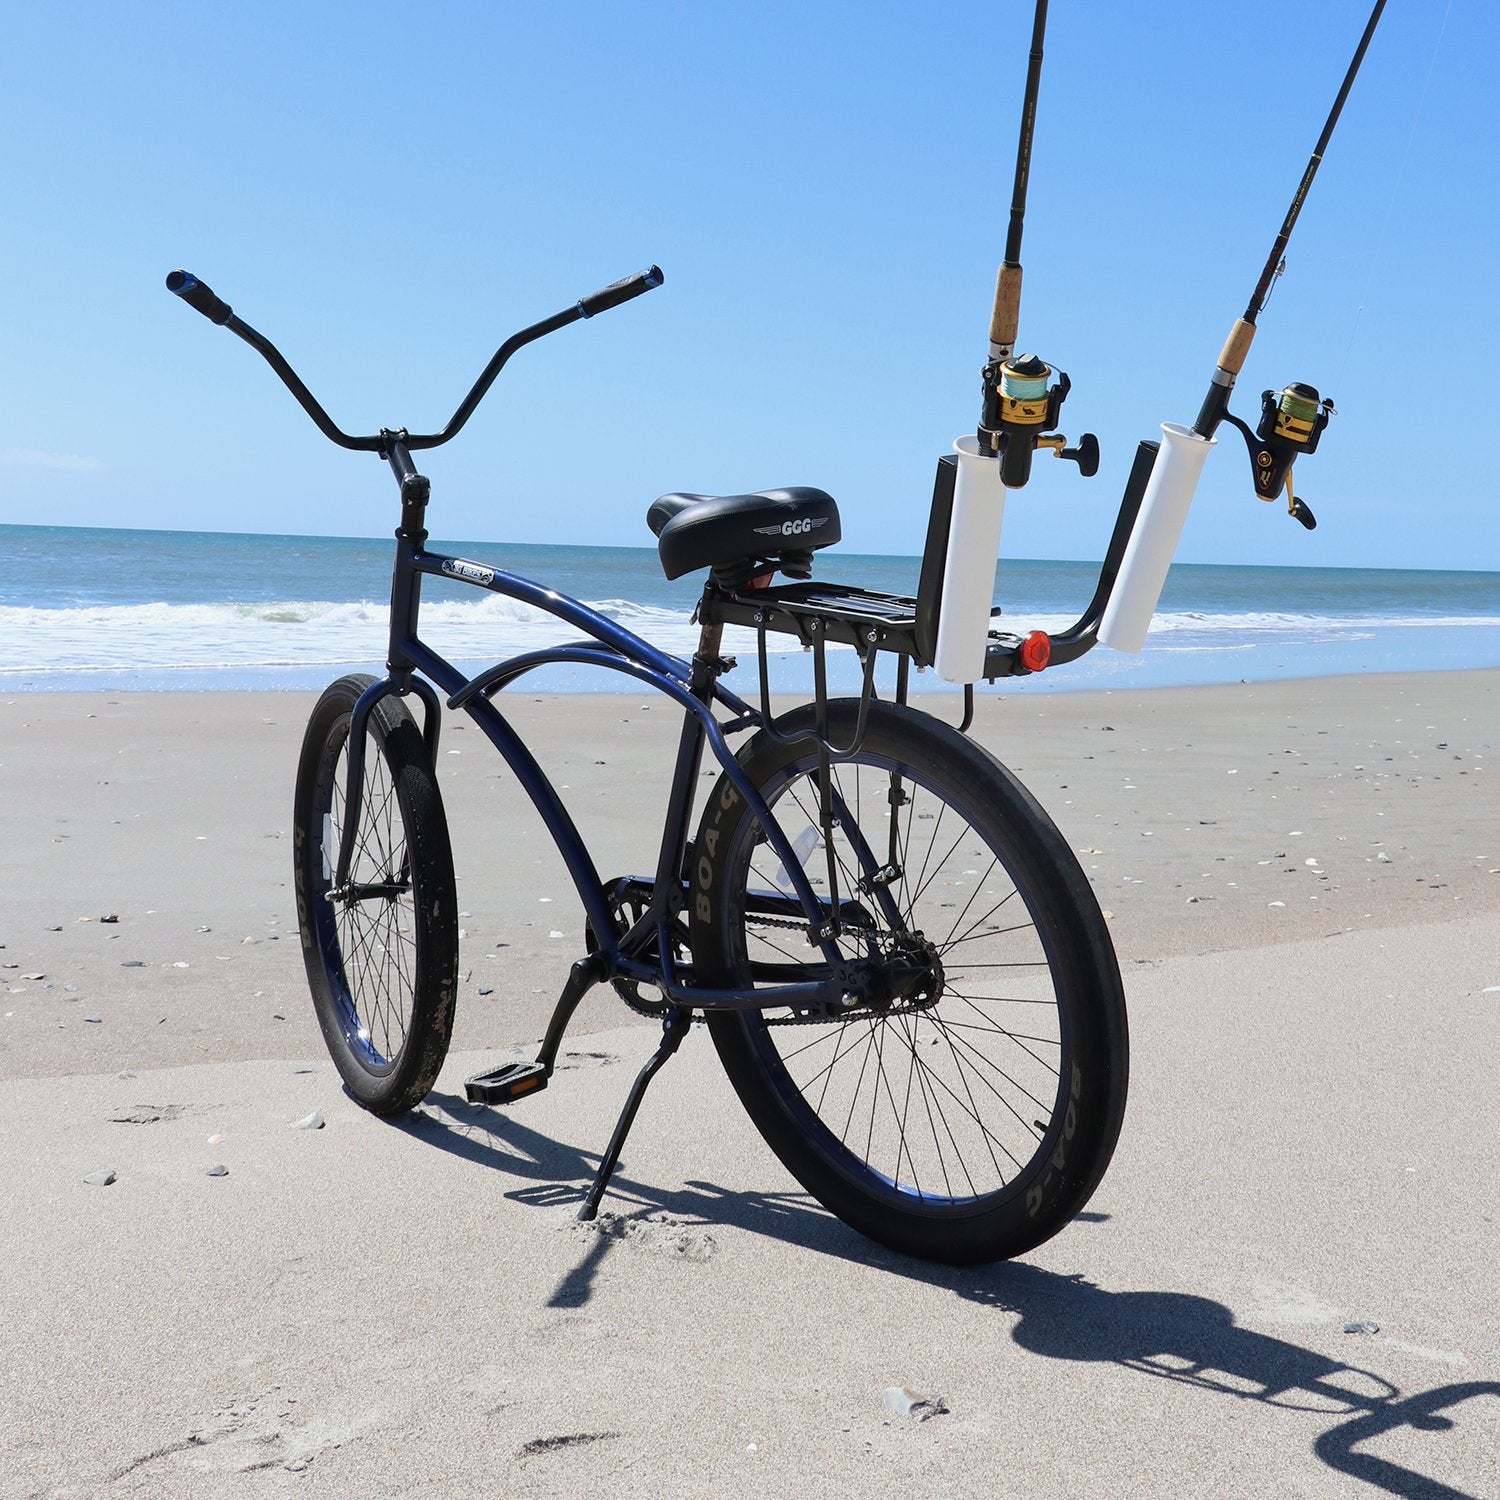 Fishing rod holder for bike 